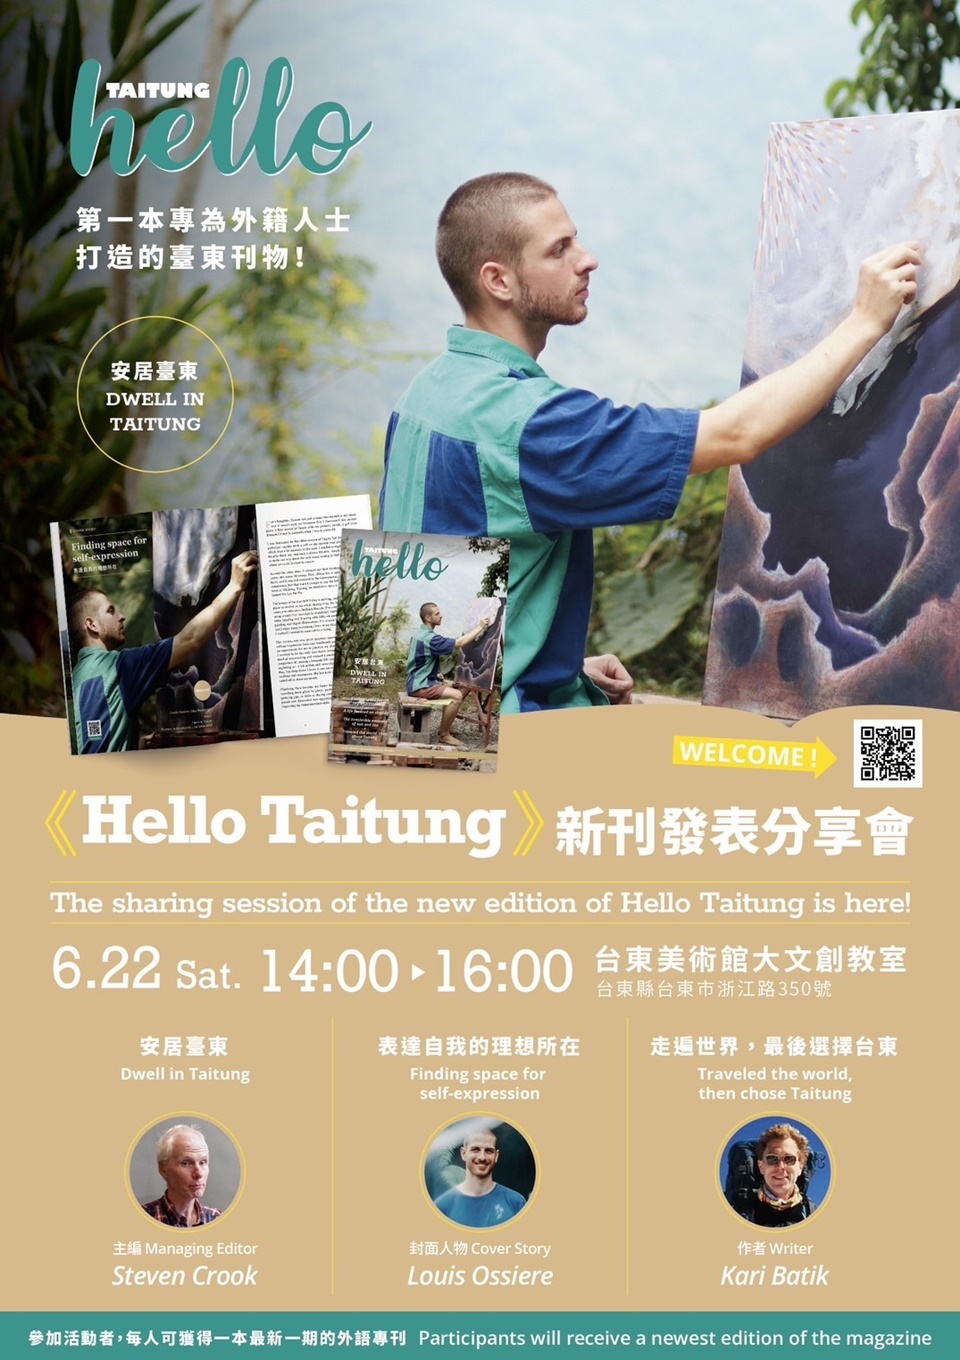 臺東縣政府外語刊物《Hello Taitung》22日下午2點將於臺東美術館大文創教室舉辦新刊分享會。